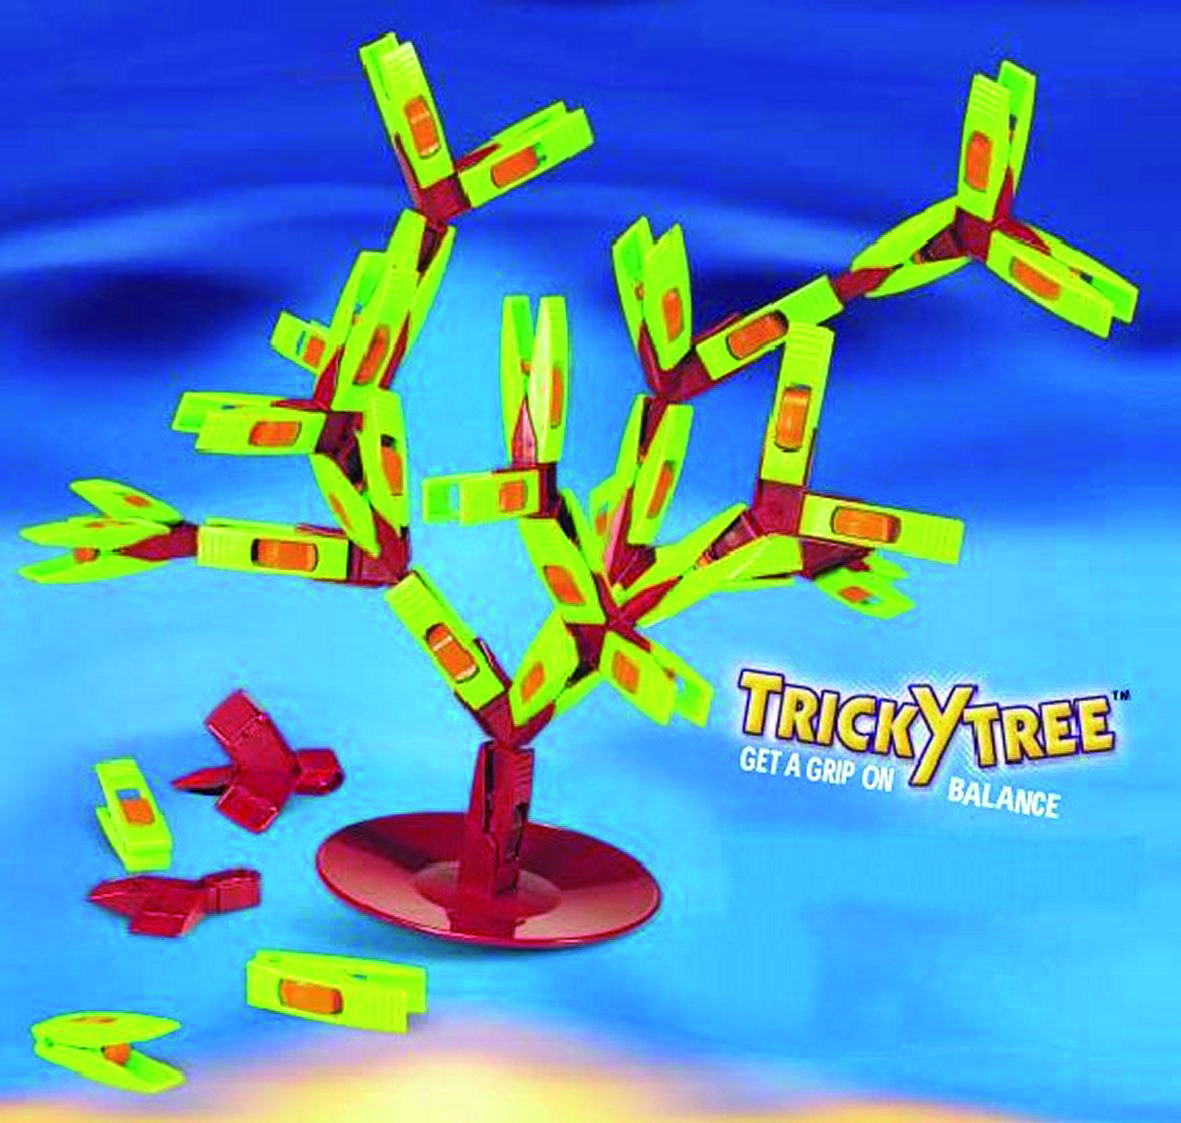 Ticky tree